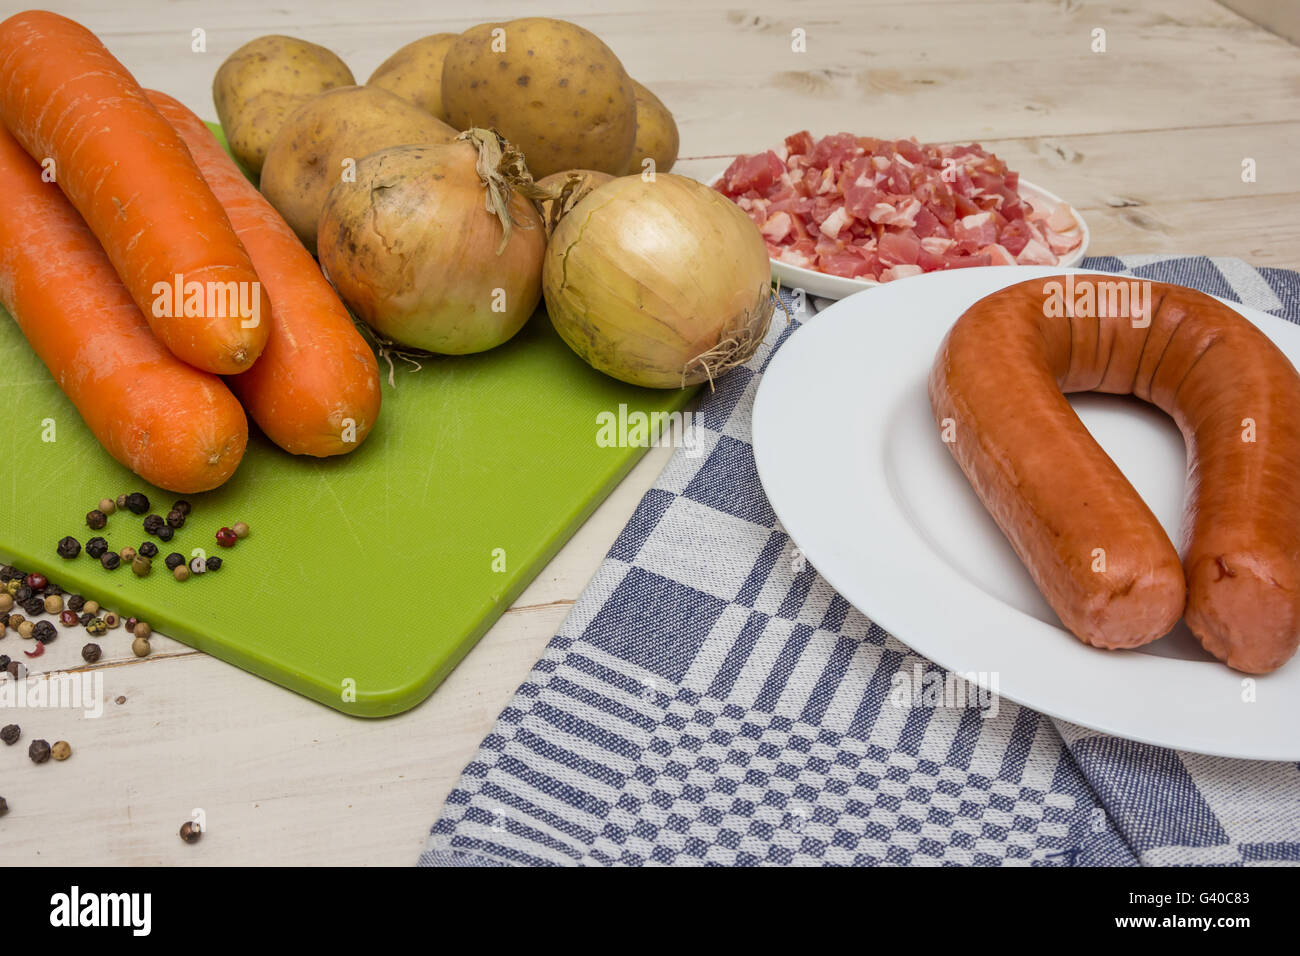 Recipe: 'Hutspot' with smoked sausage - Vegan Amsterdam